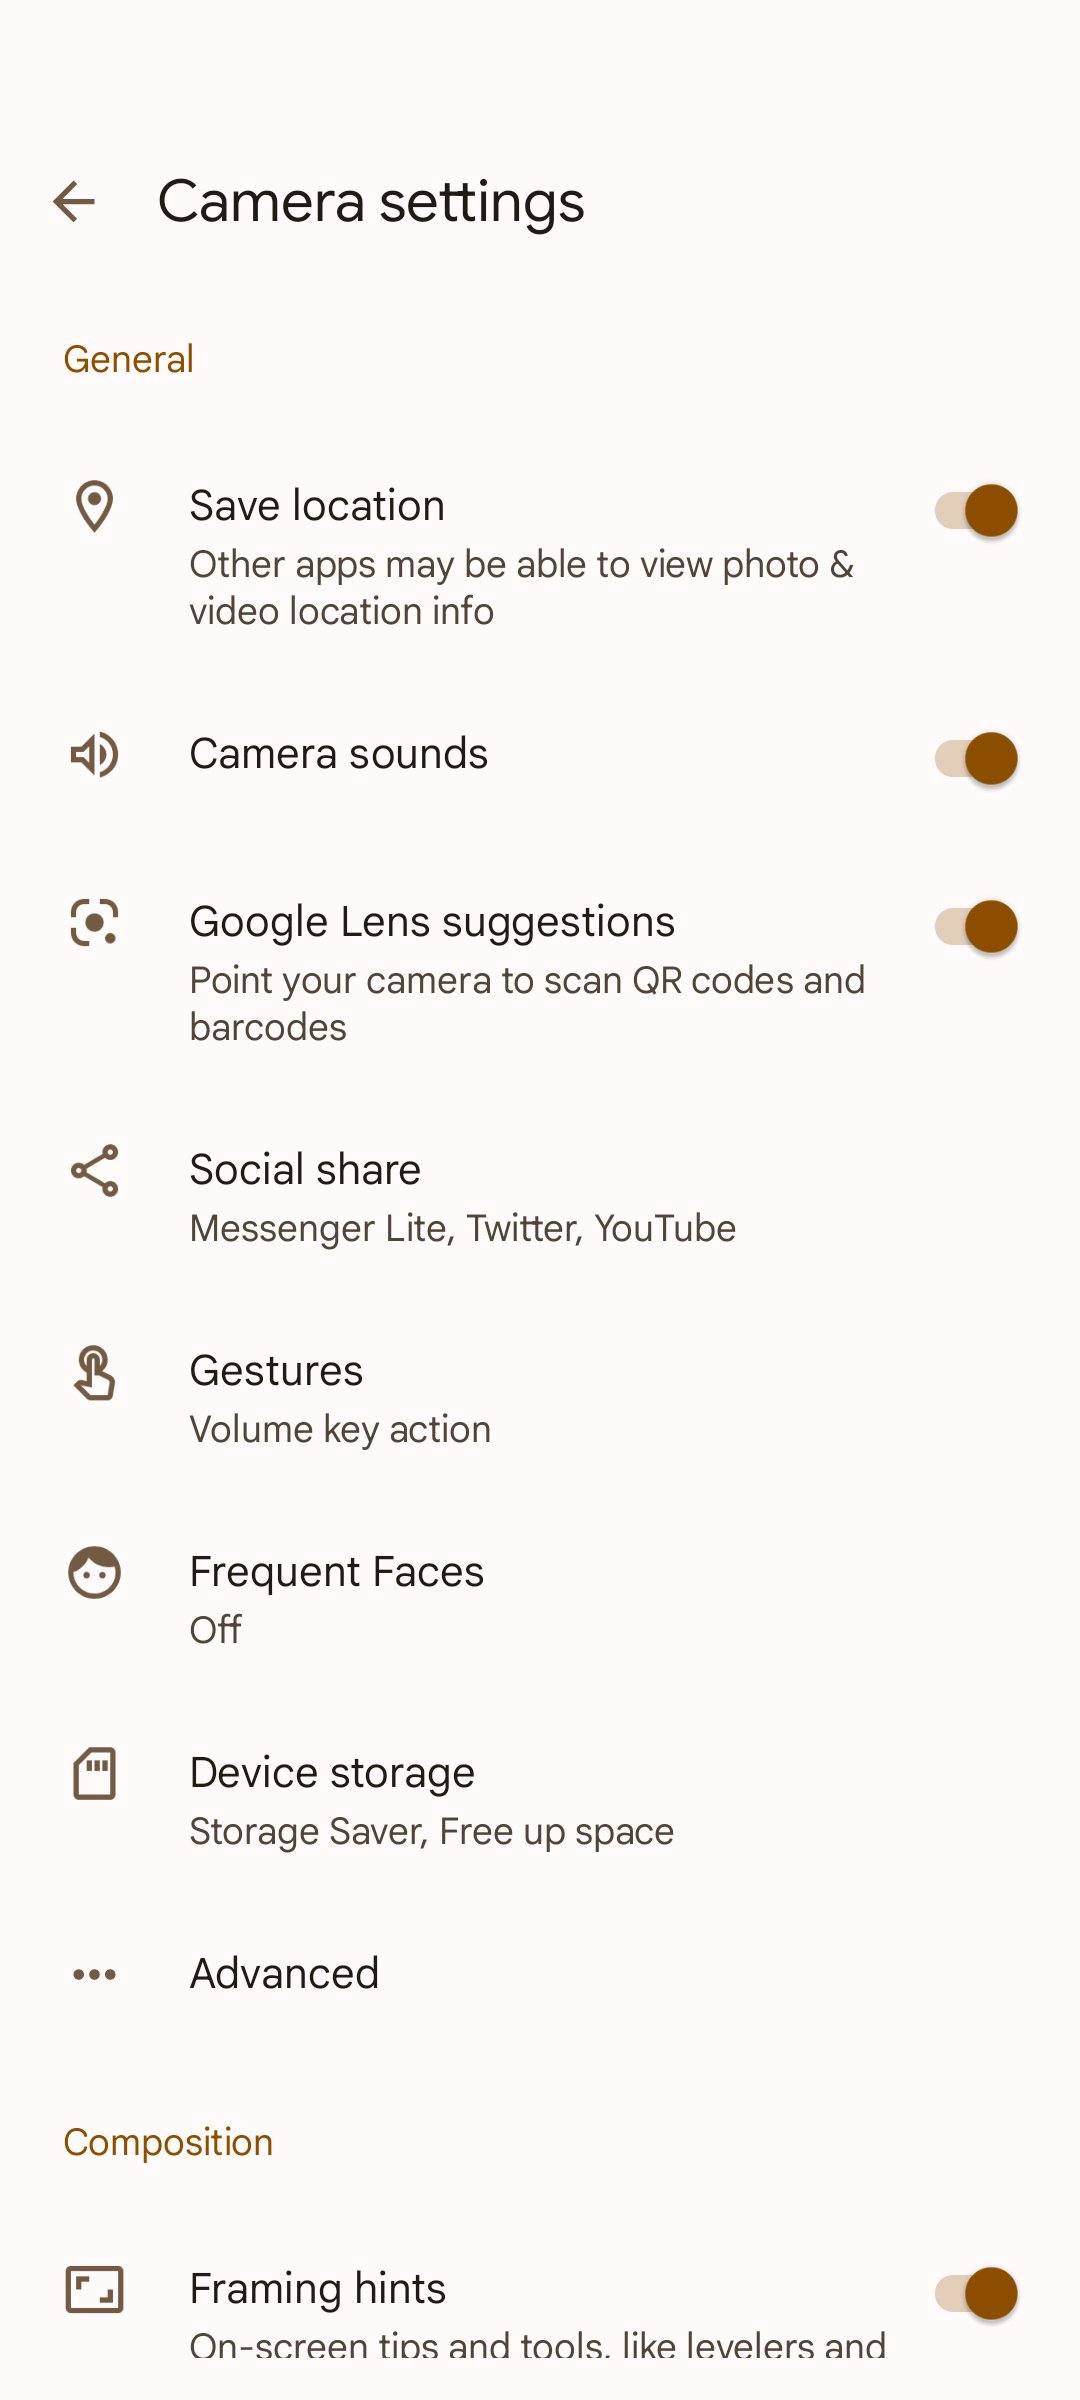 Captura de tela das configurações do aplicativo de câmera do smartphone Google Pixel